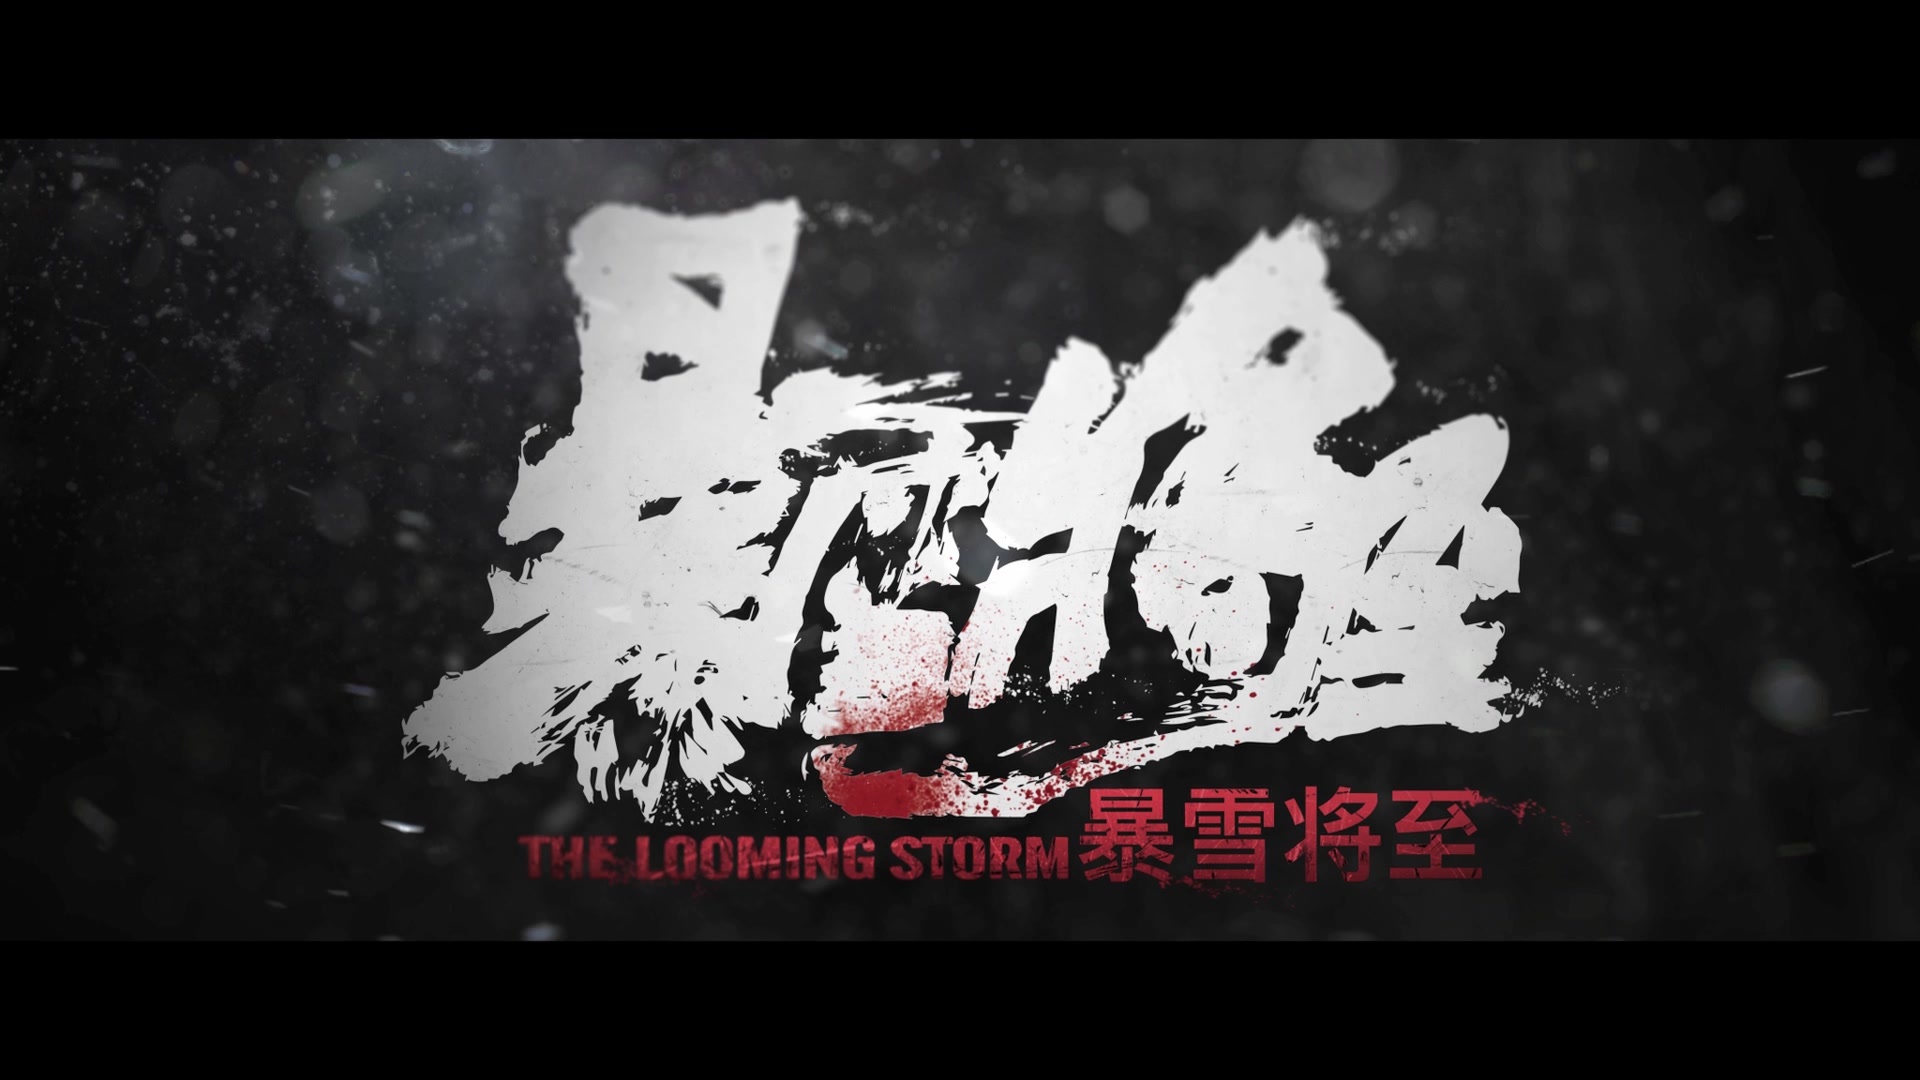 段奕宏东京封帝之作《暴雪将至》,将于11月17日在国内院线上映,怎能不